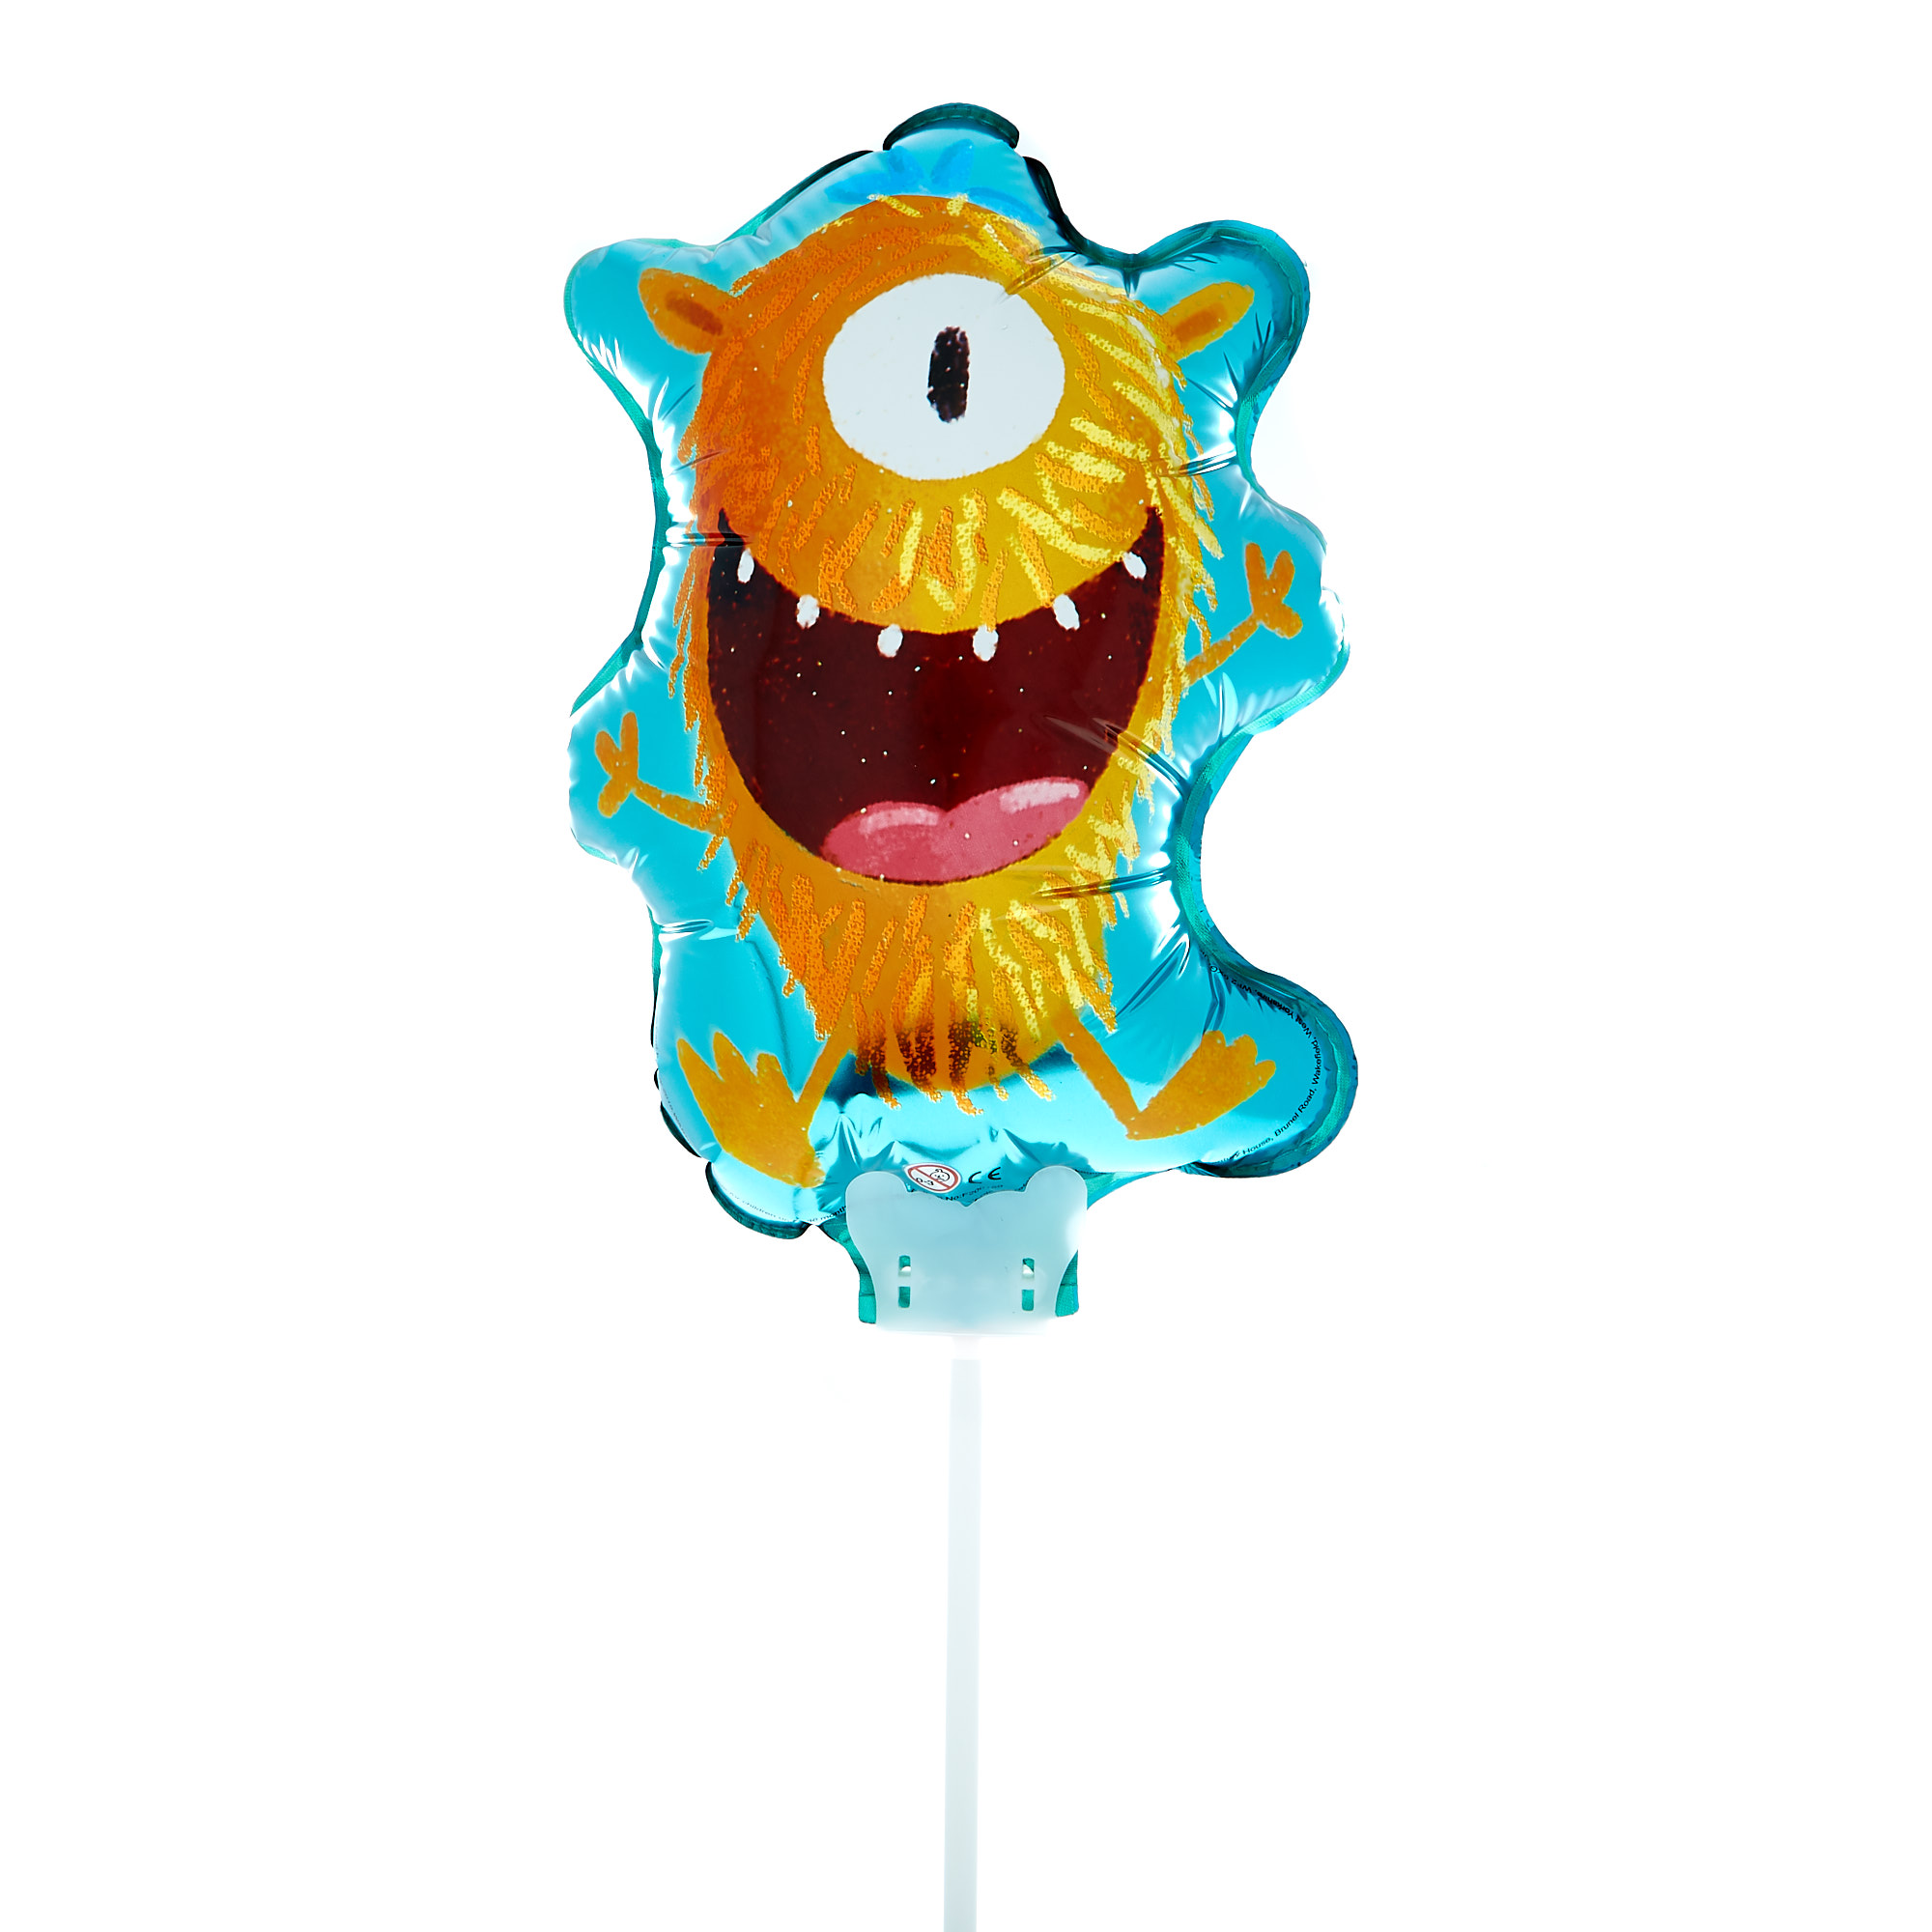 Little Monster Air-Filled Balloon on a Stick